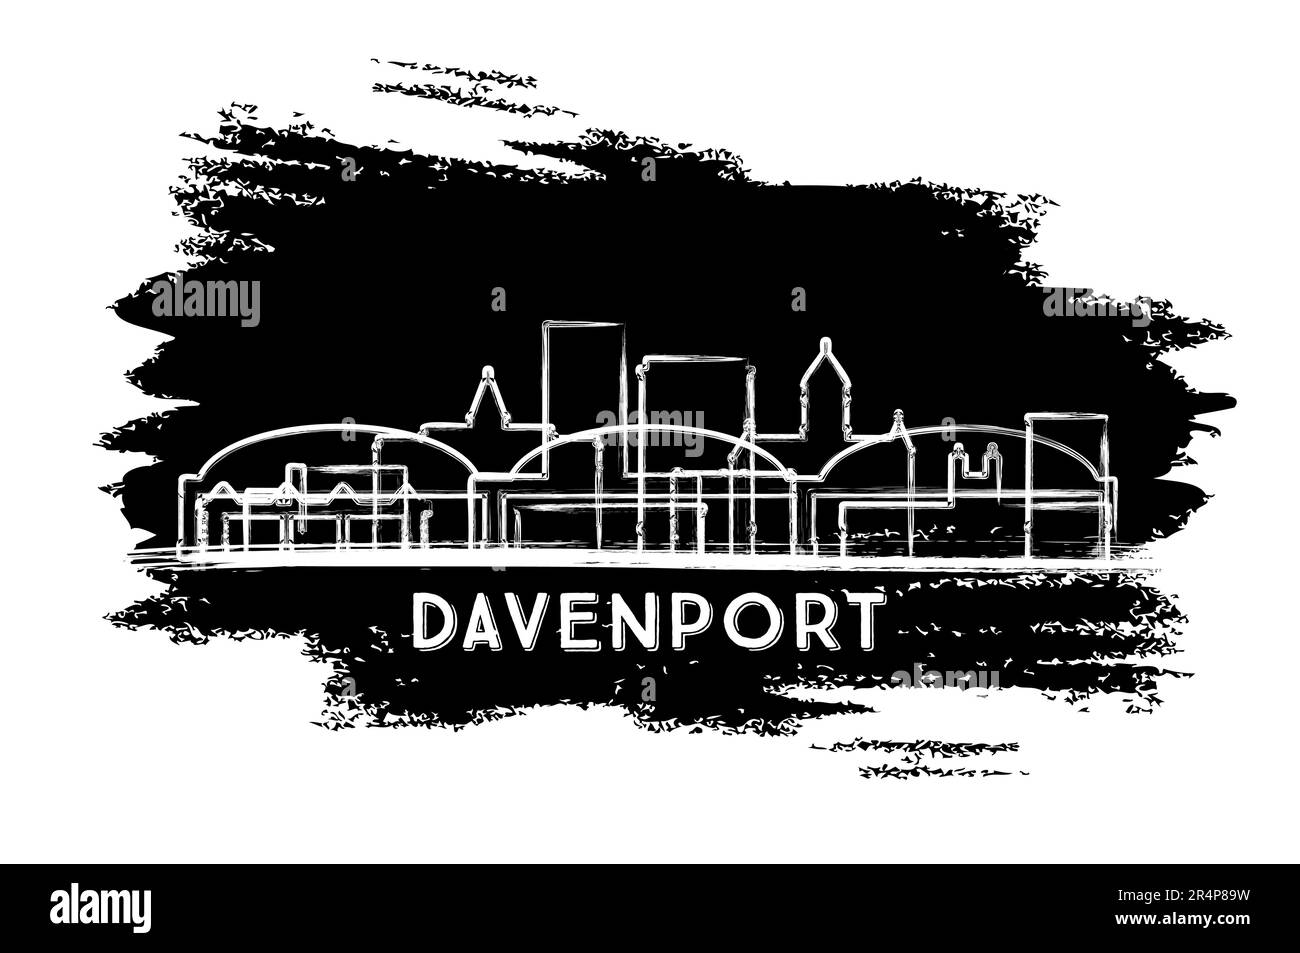 Davenport Iowa City Skyline Silhouette. Schizzo disegnato a mano. Concetto di viaggio d'affari e turismo con architettura moderna. Illustrazione vettoriale. Illustrazione Vettoriale